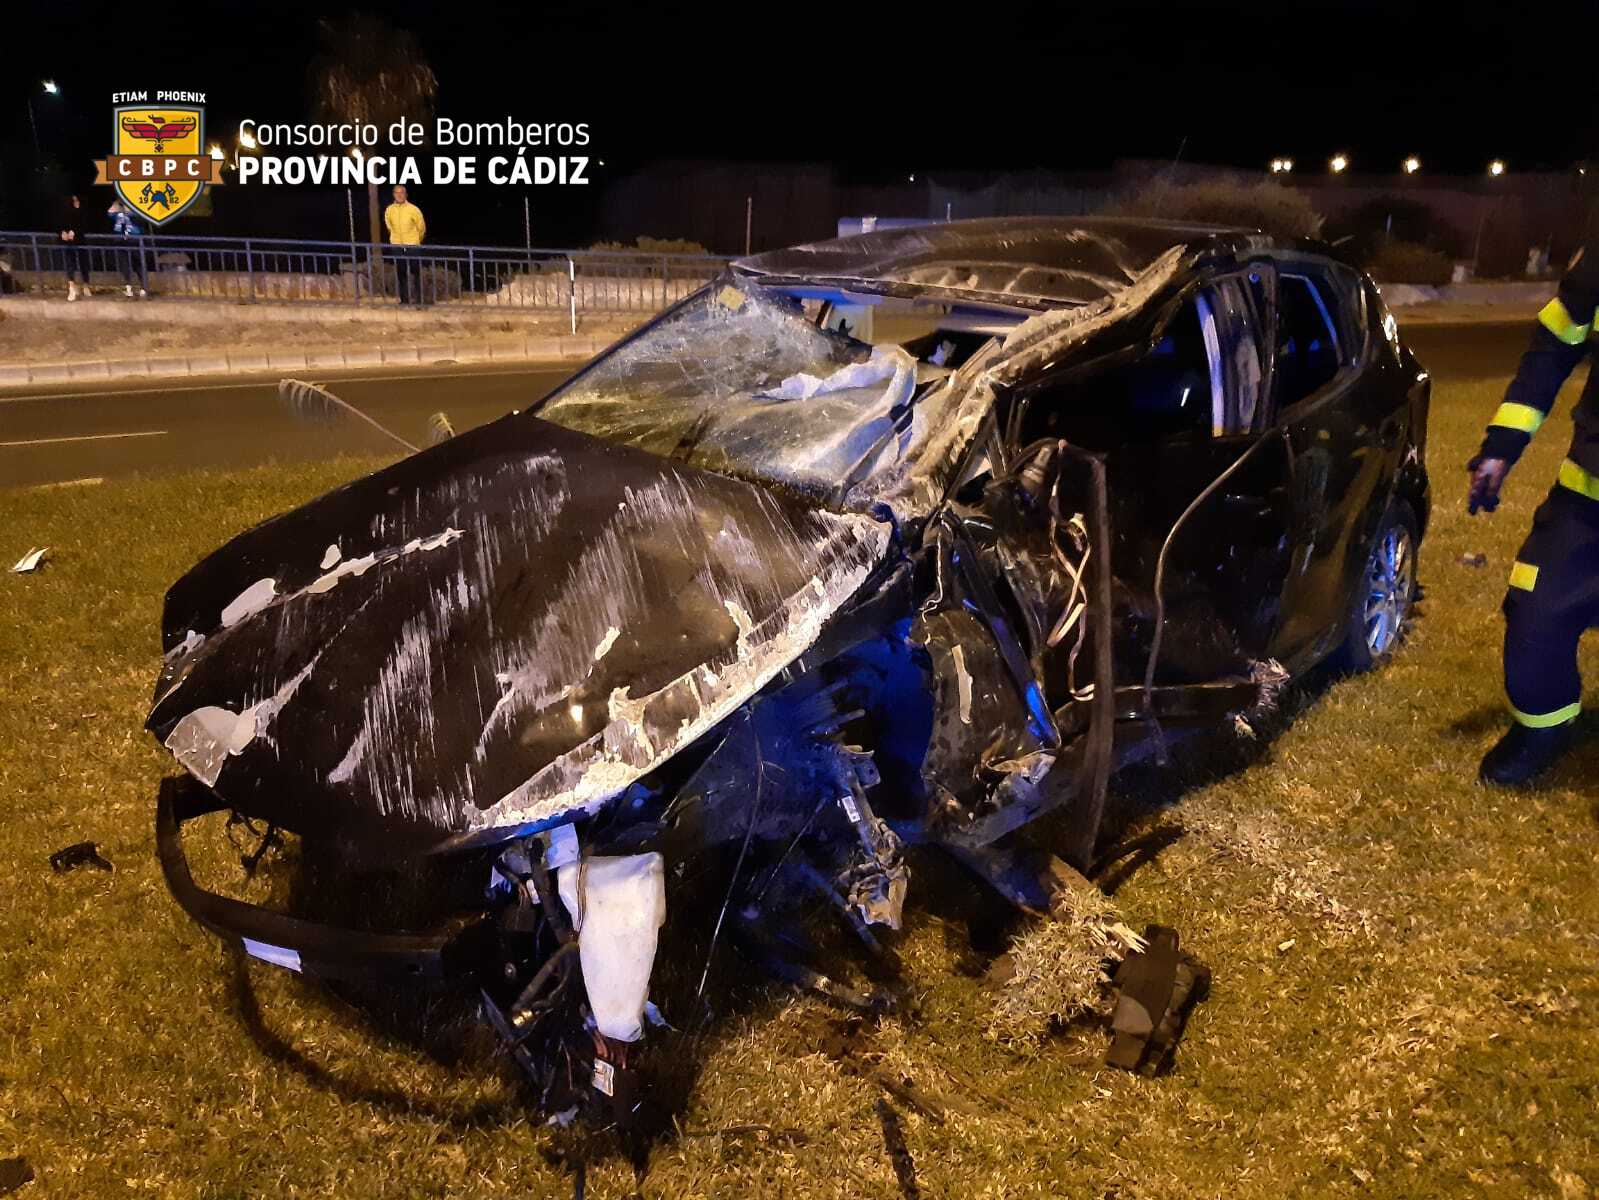 Brutal impacto entre dos vehículos a la entrada de Cádiz.